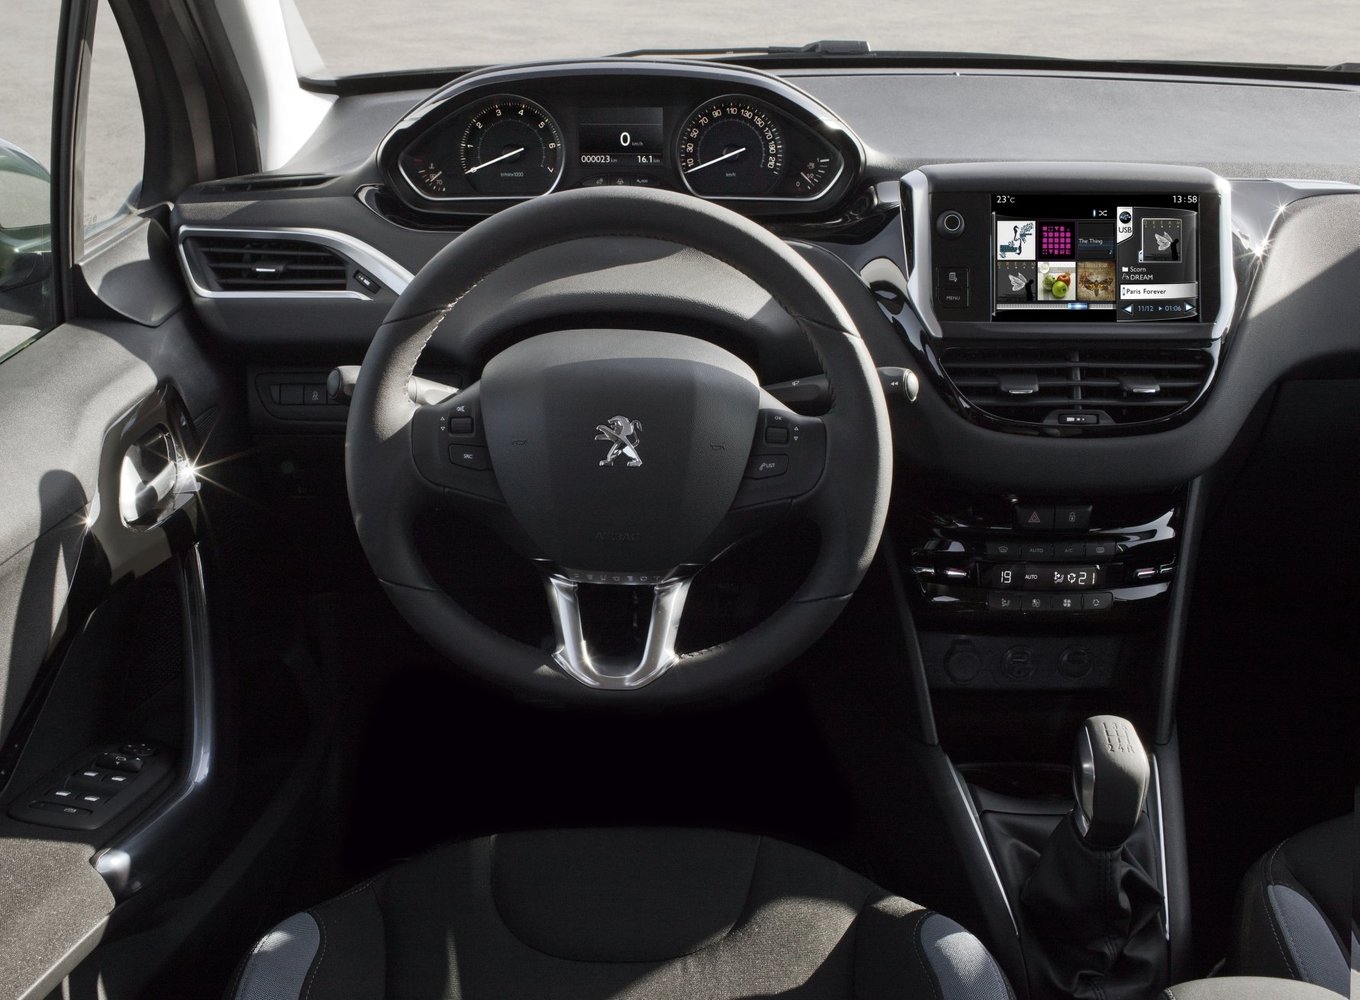 хэтчбек 3 дв. Peugeot 208 2013 - 2015г выпуска модификация 1.0 MT (68 л.с.)